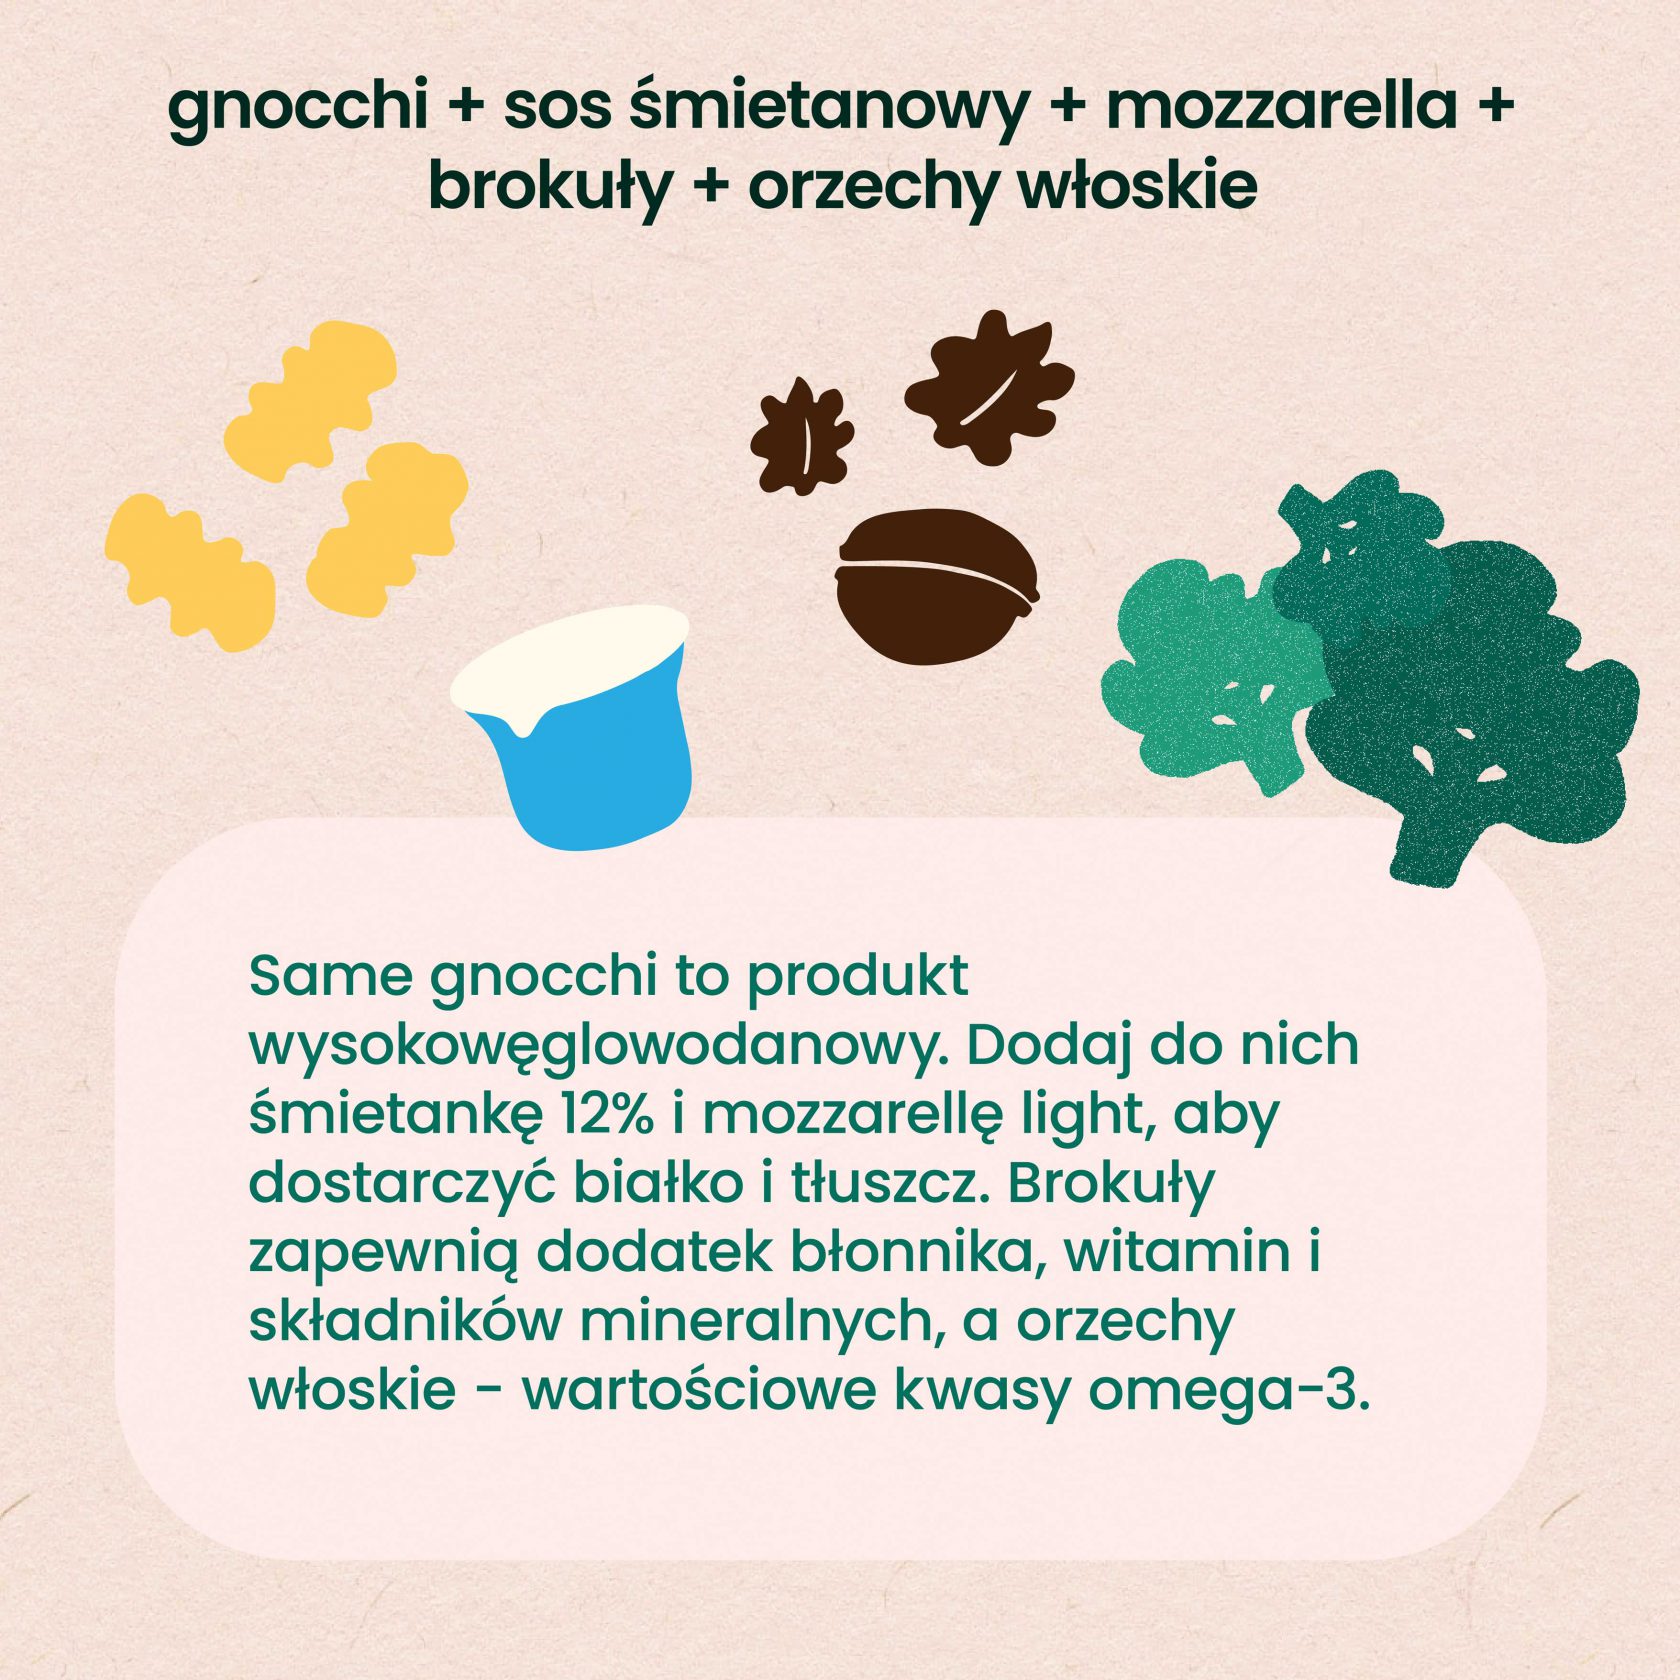 Gotowce - gnocchi. Produkt wysokowęglowodanowych. Dodaj do nich tłuszcz i białko (śmietankę i mozzarellę light) oraz błonnik i inne składniki odżywcze